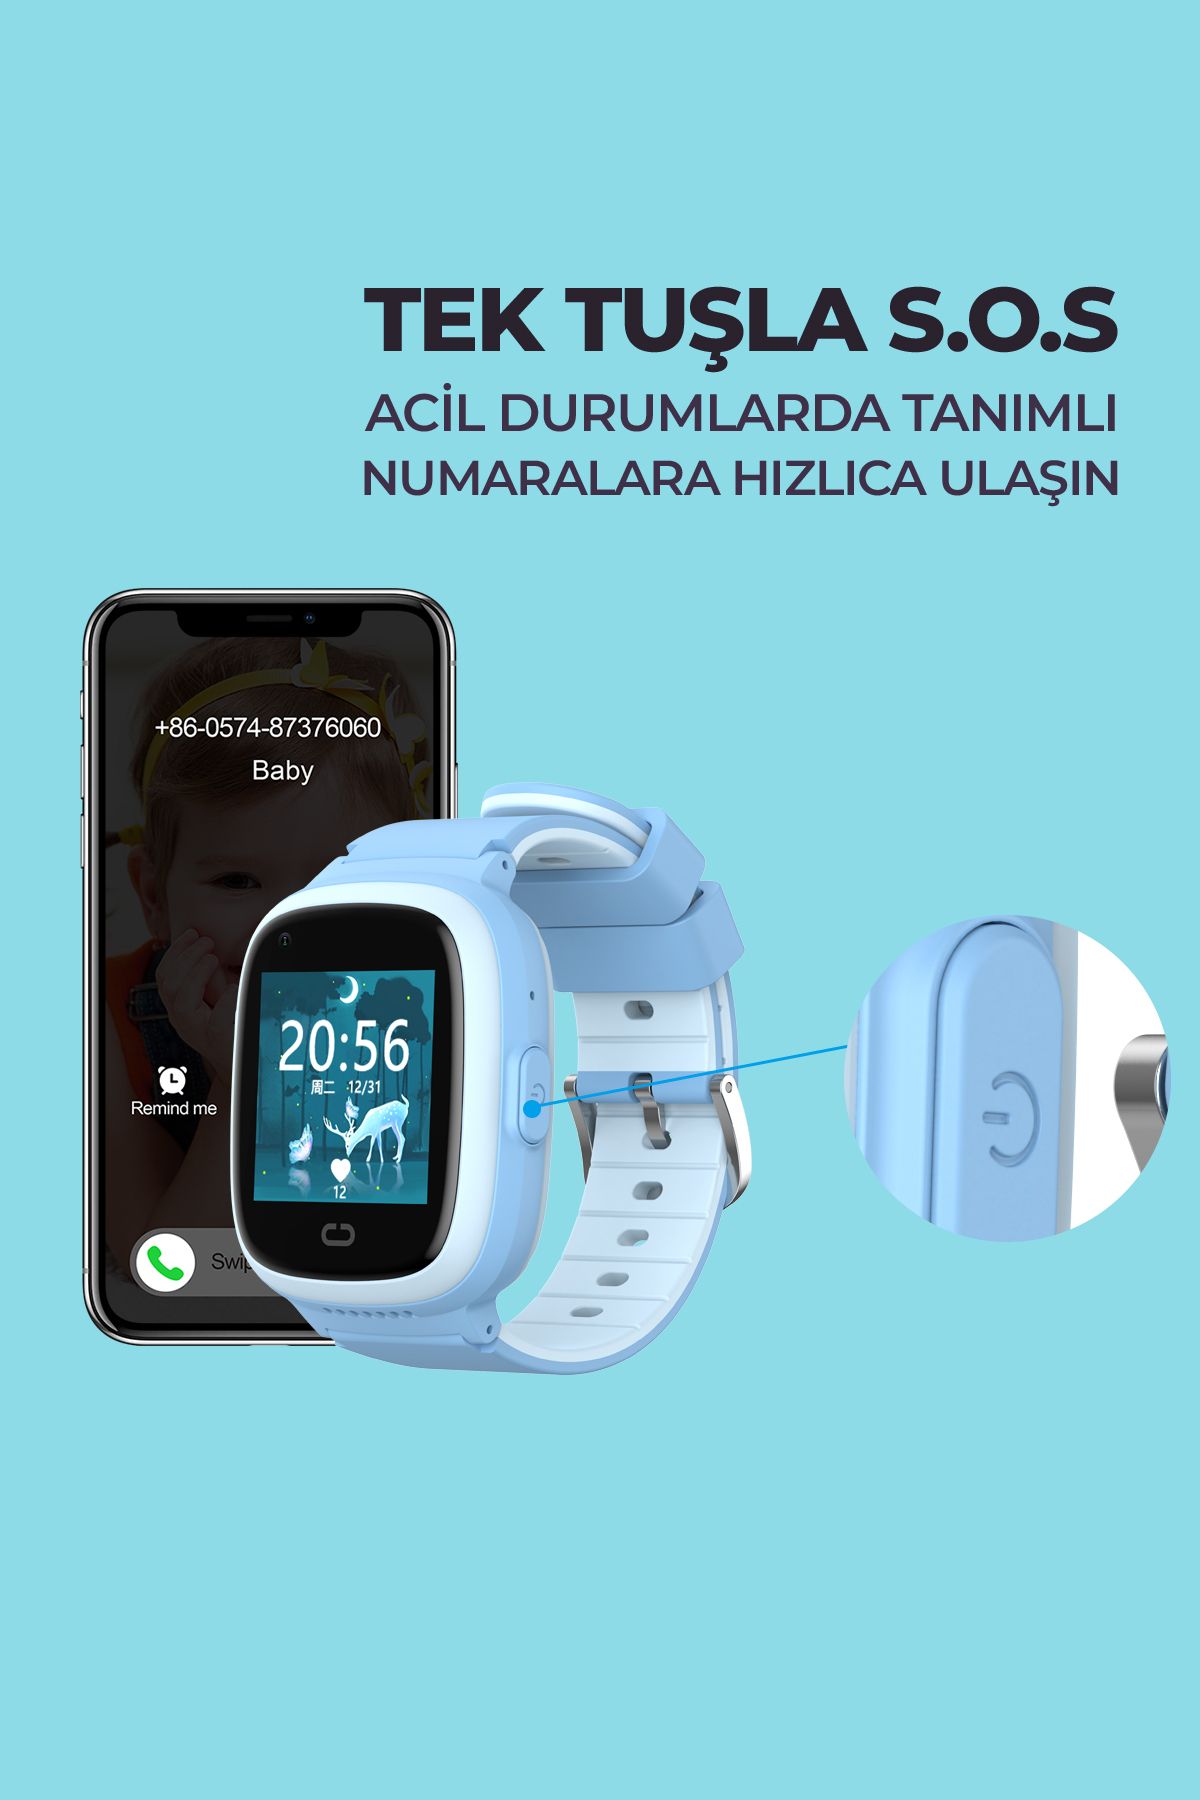 Reloj GPS para Niños Smartwatch Havit KW11 con 4G color Celeste